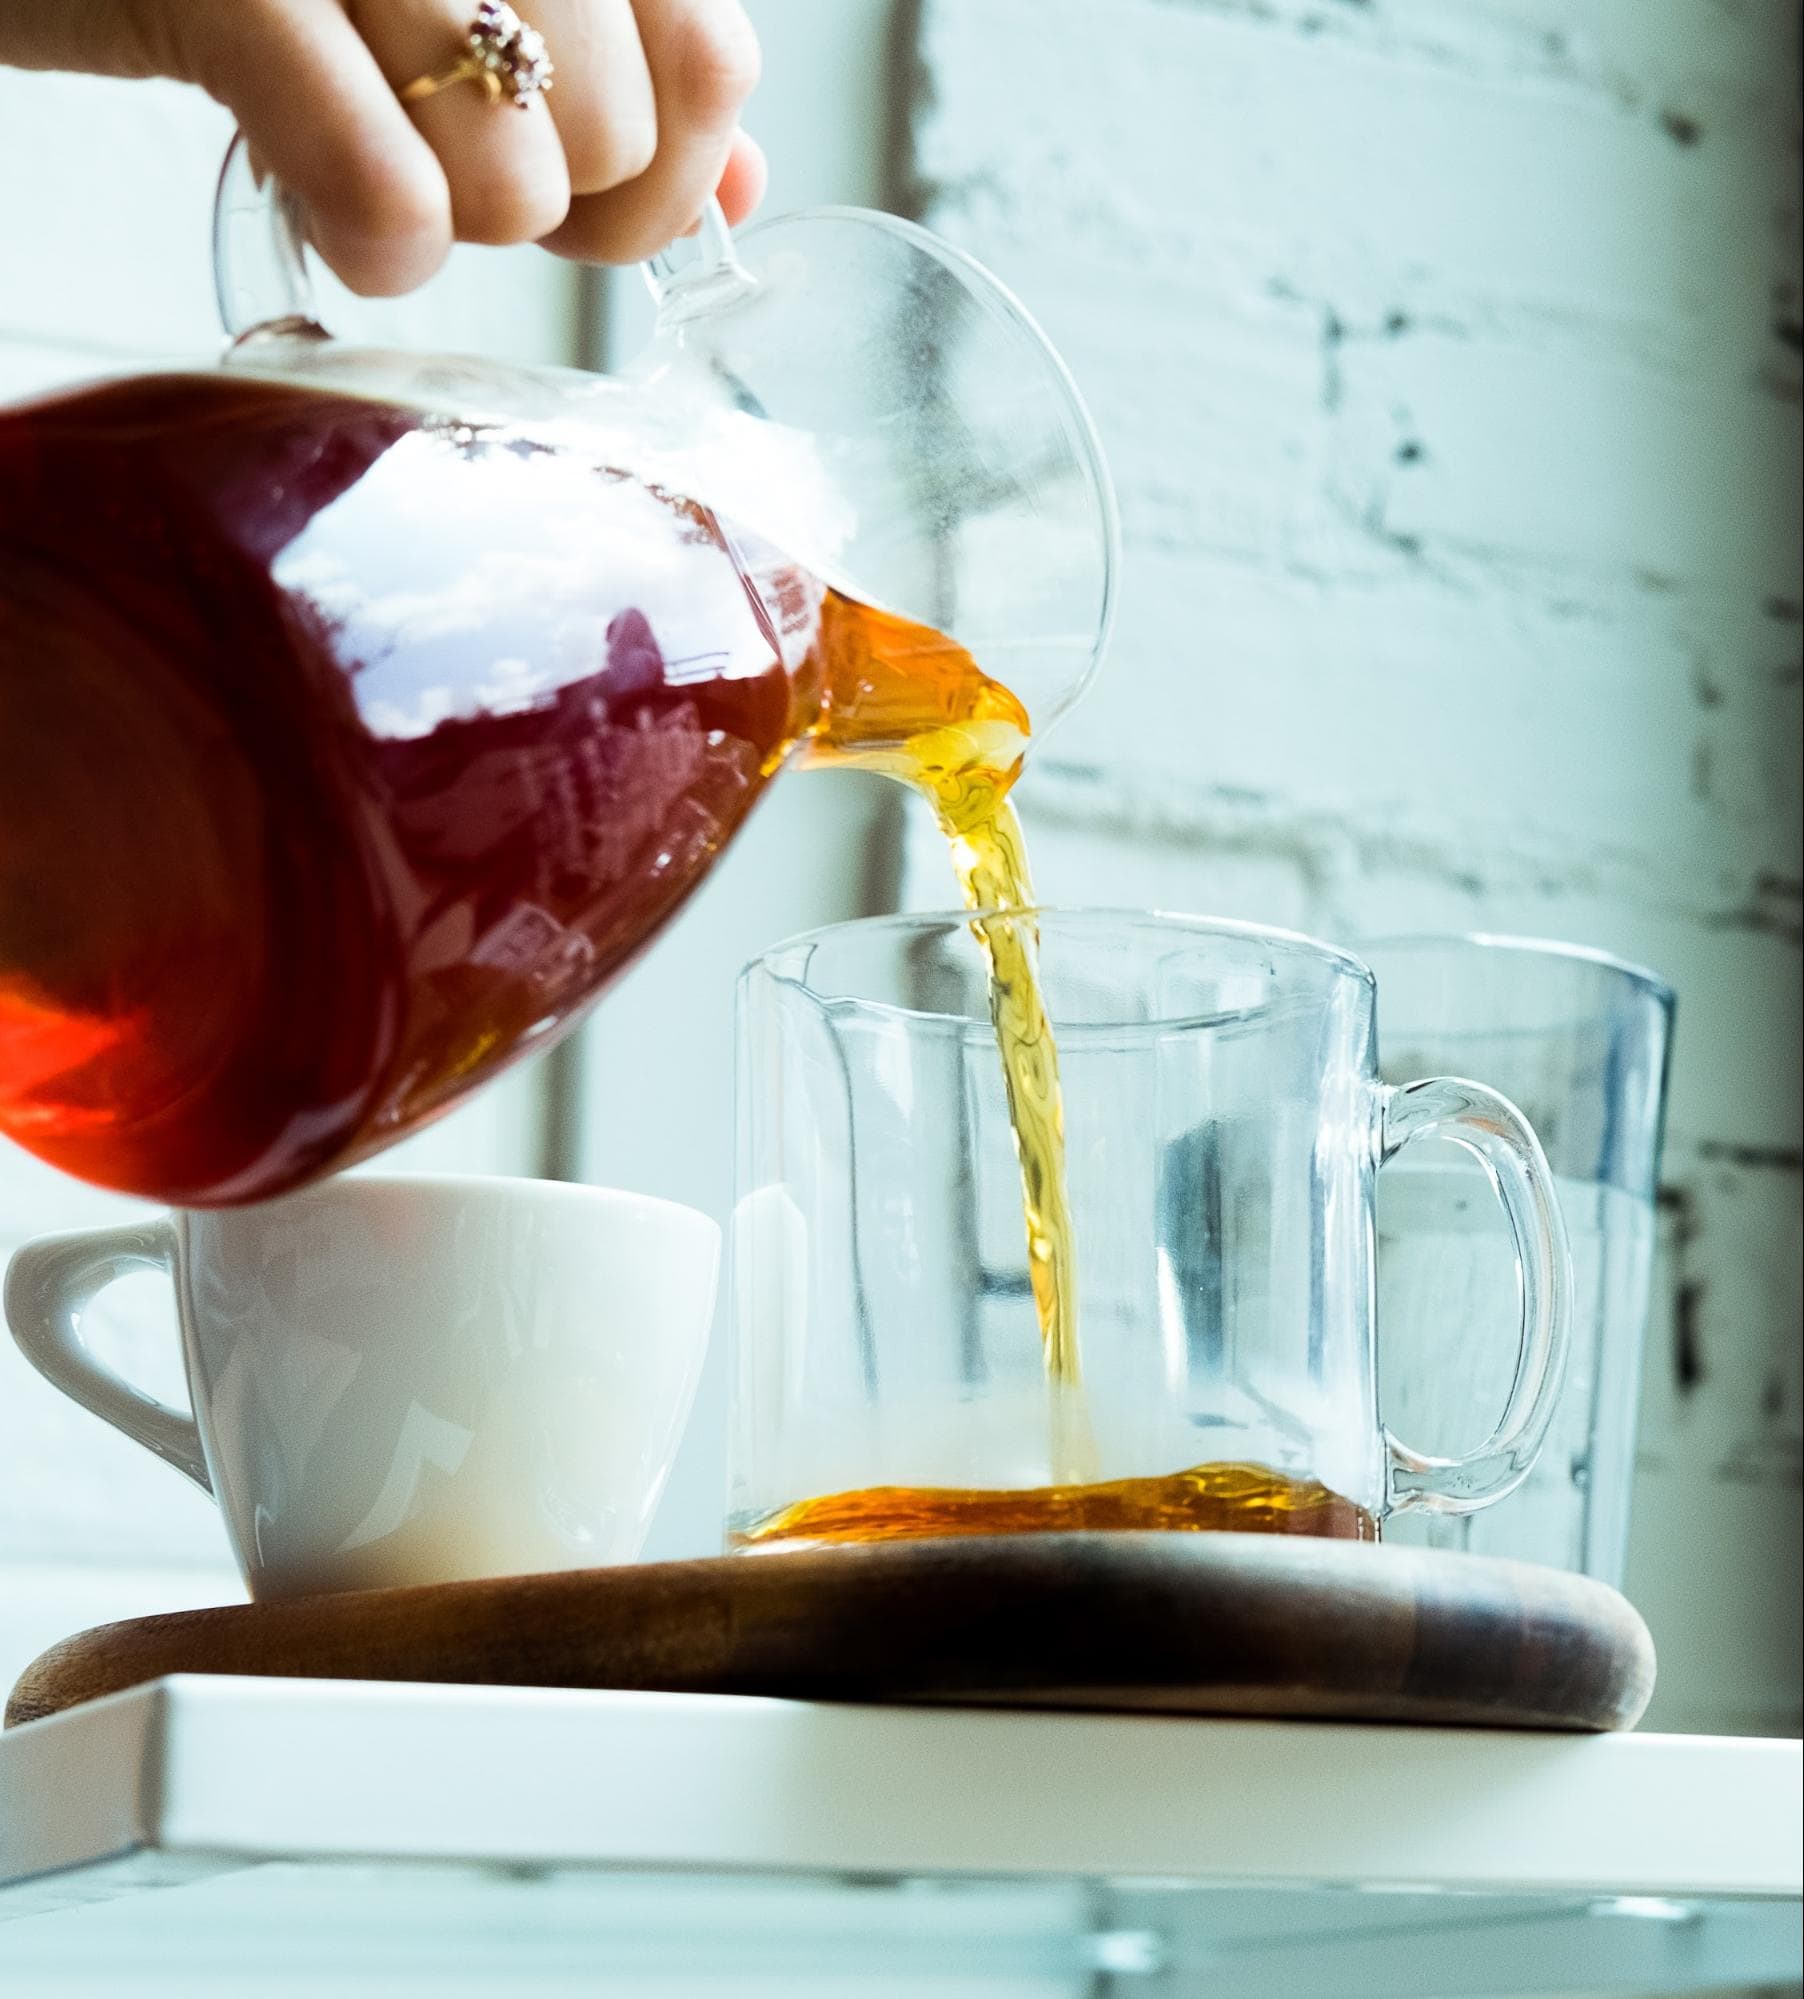 Rooibos Tea Benefits: Image of brewed rooibos tea